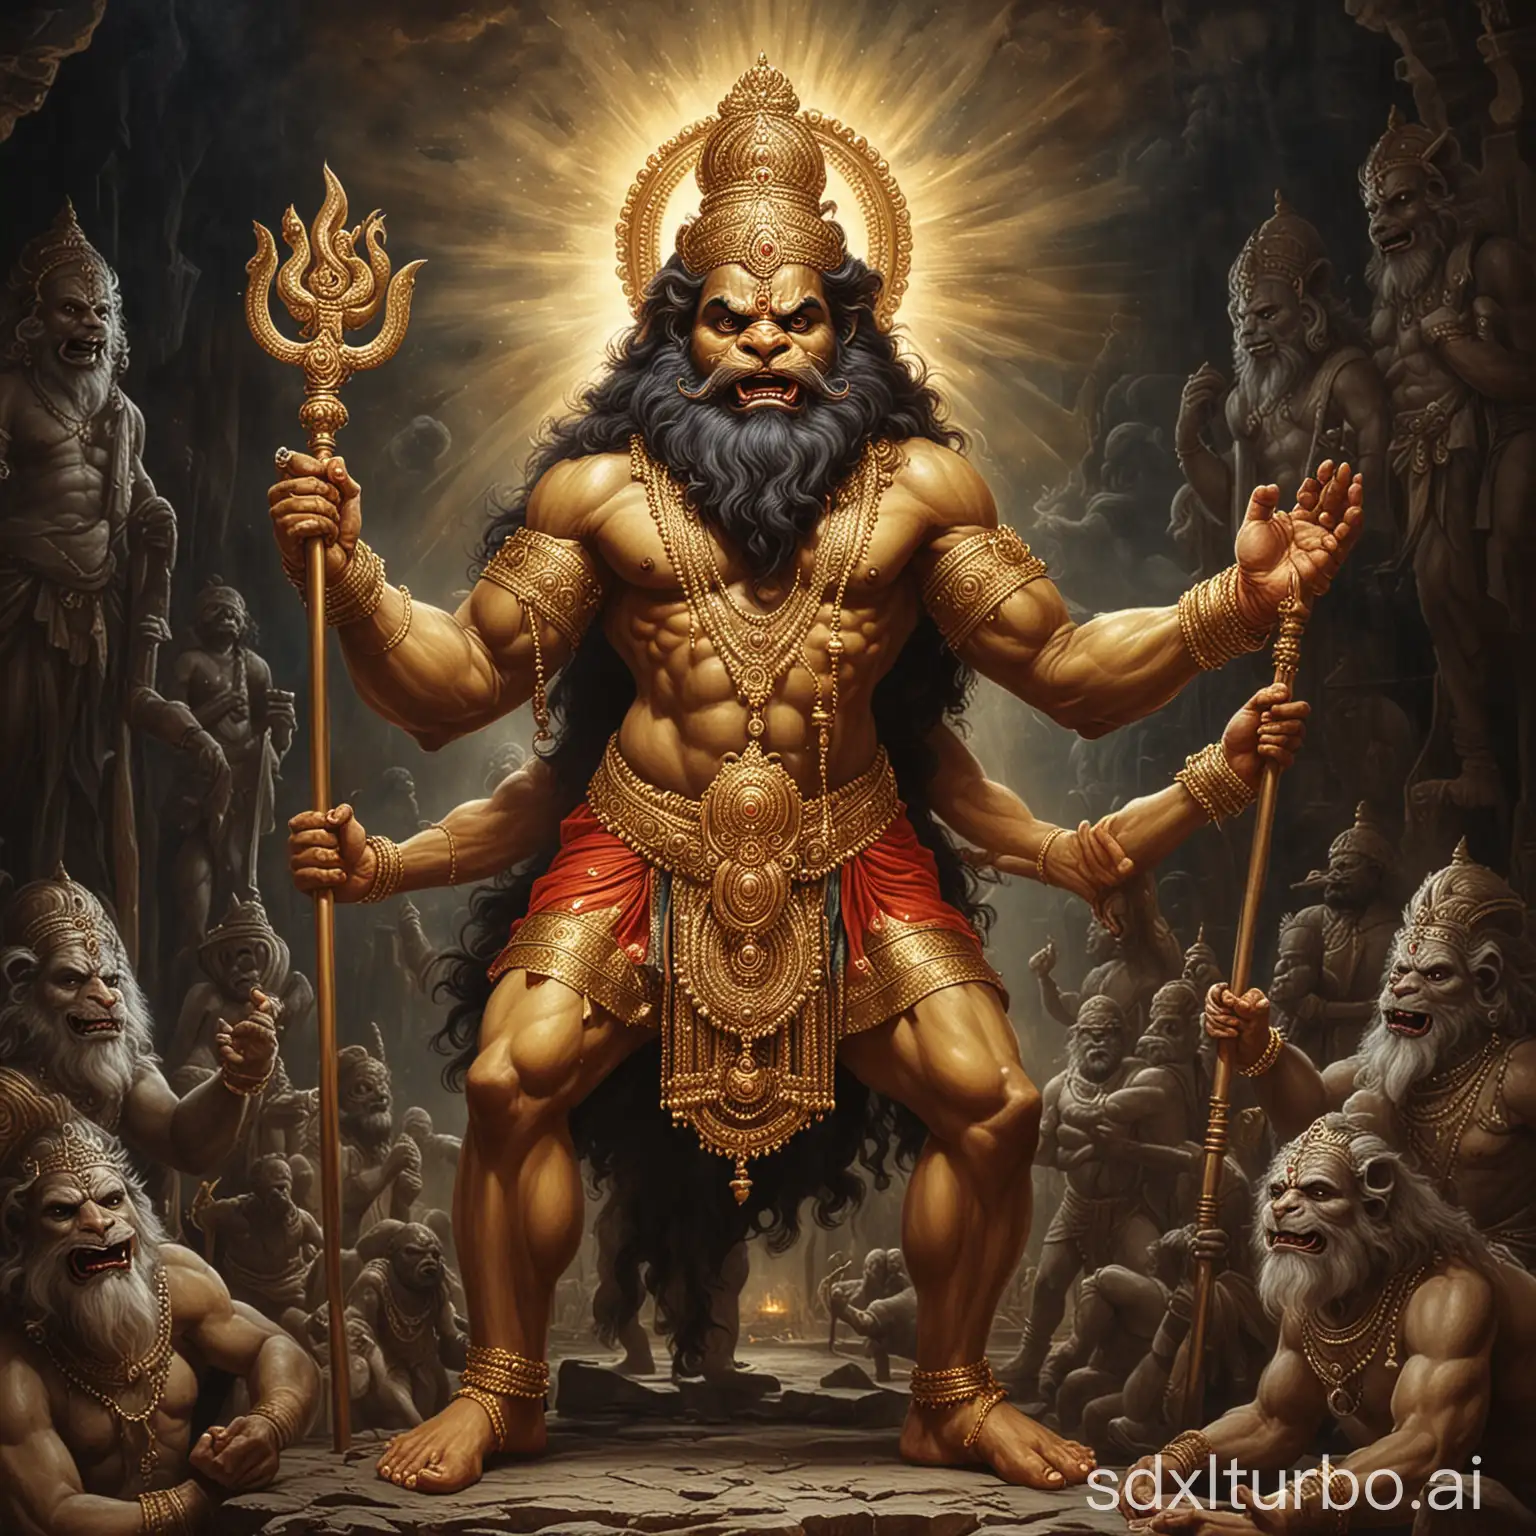 Image of lord Narasimha